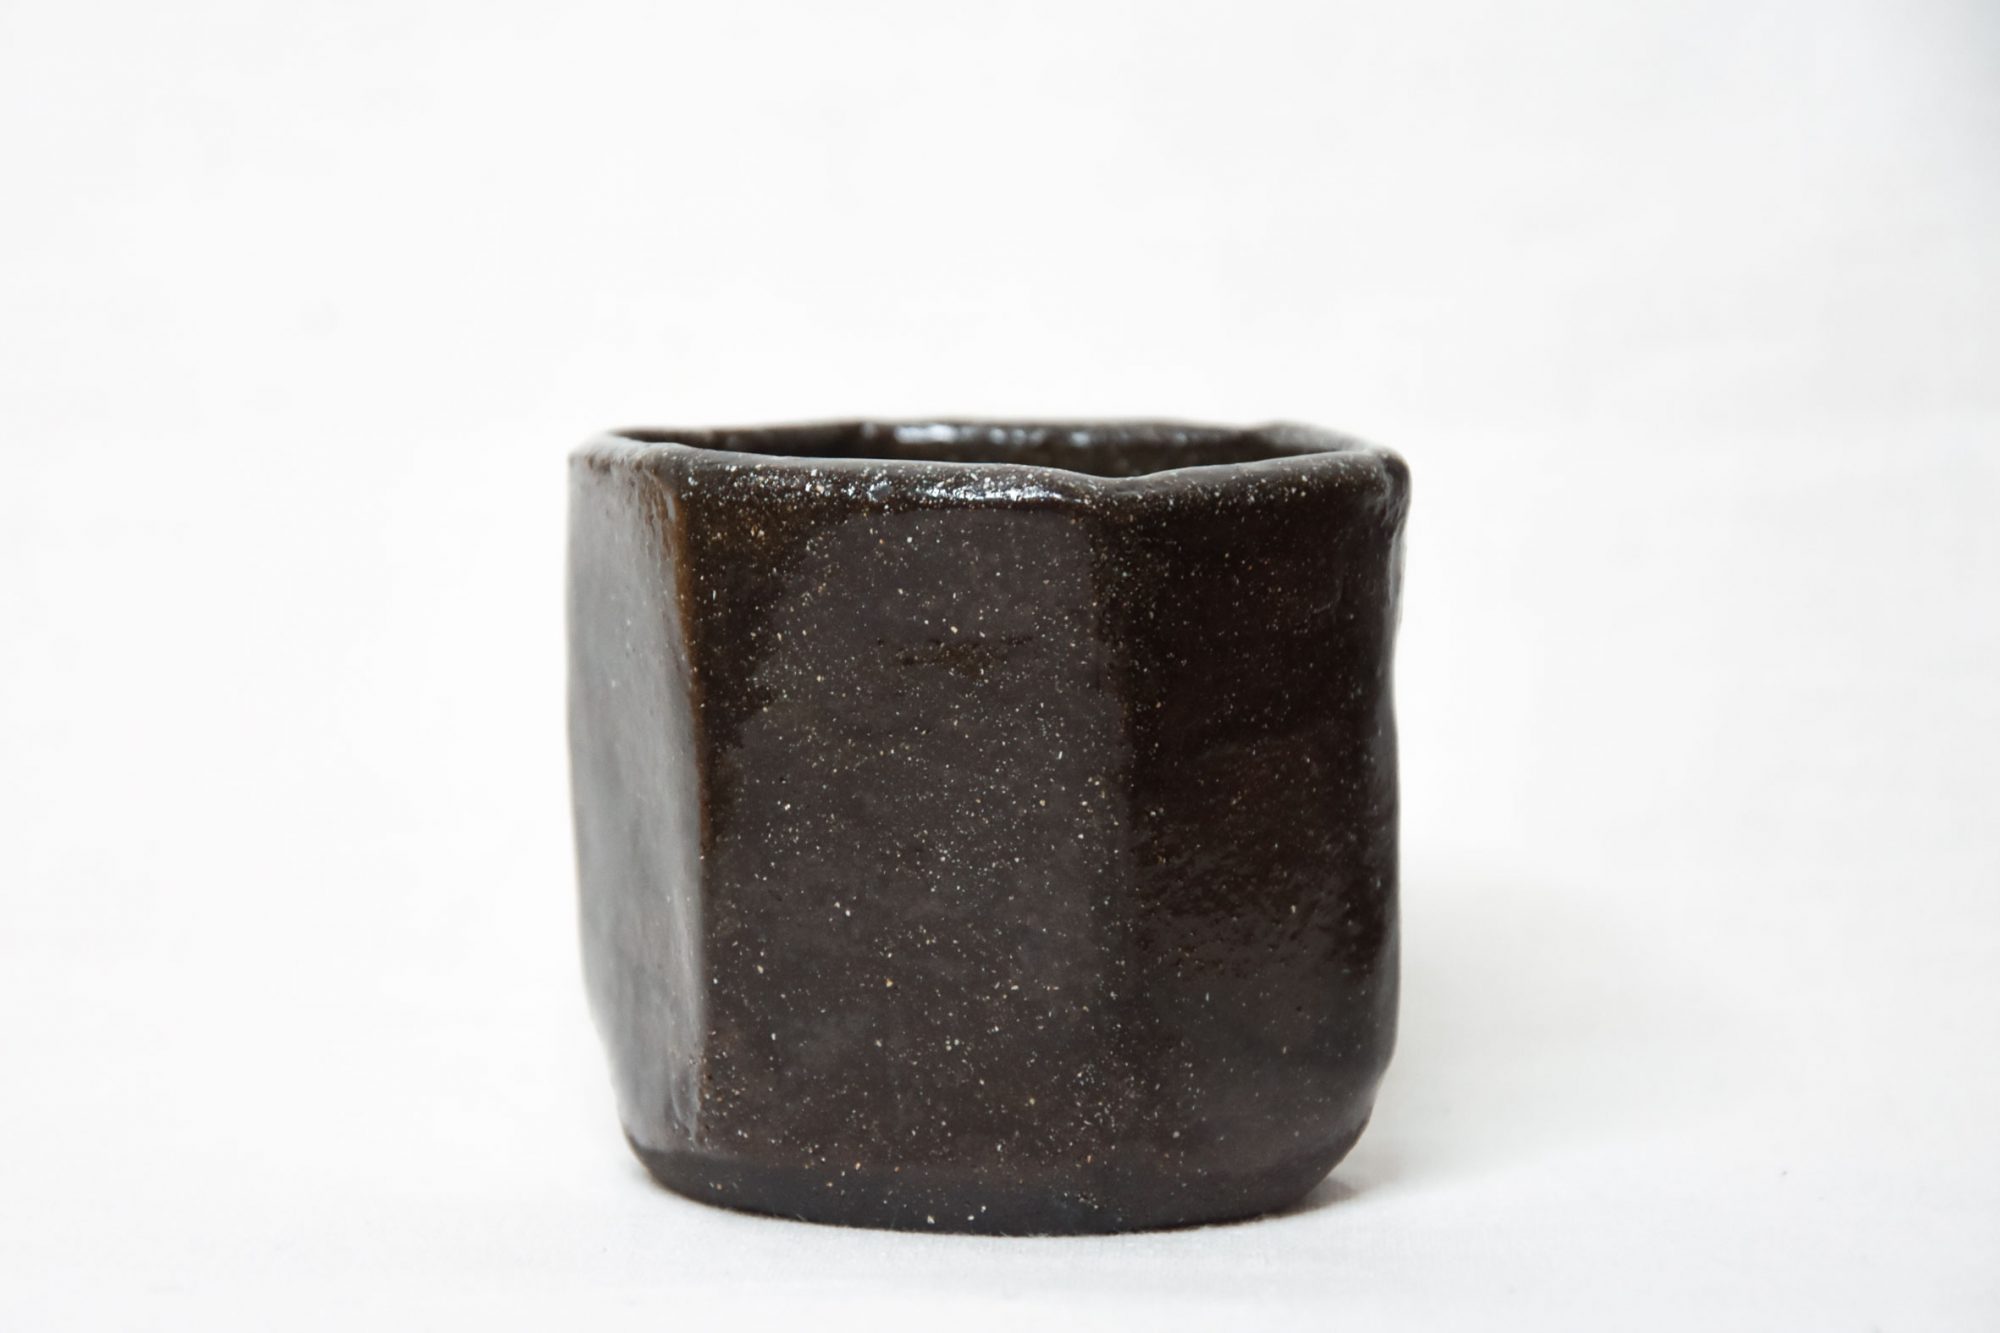 Handmade hexagonal cup